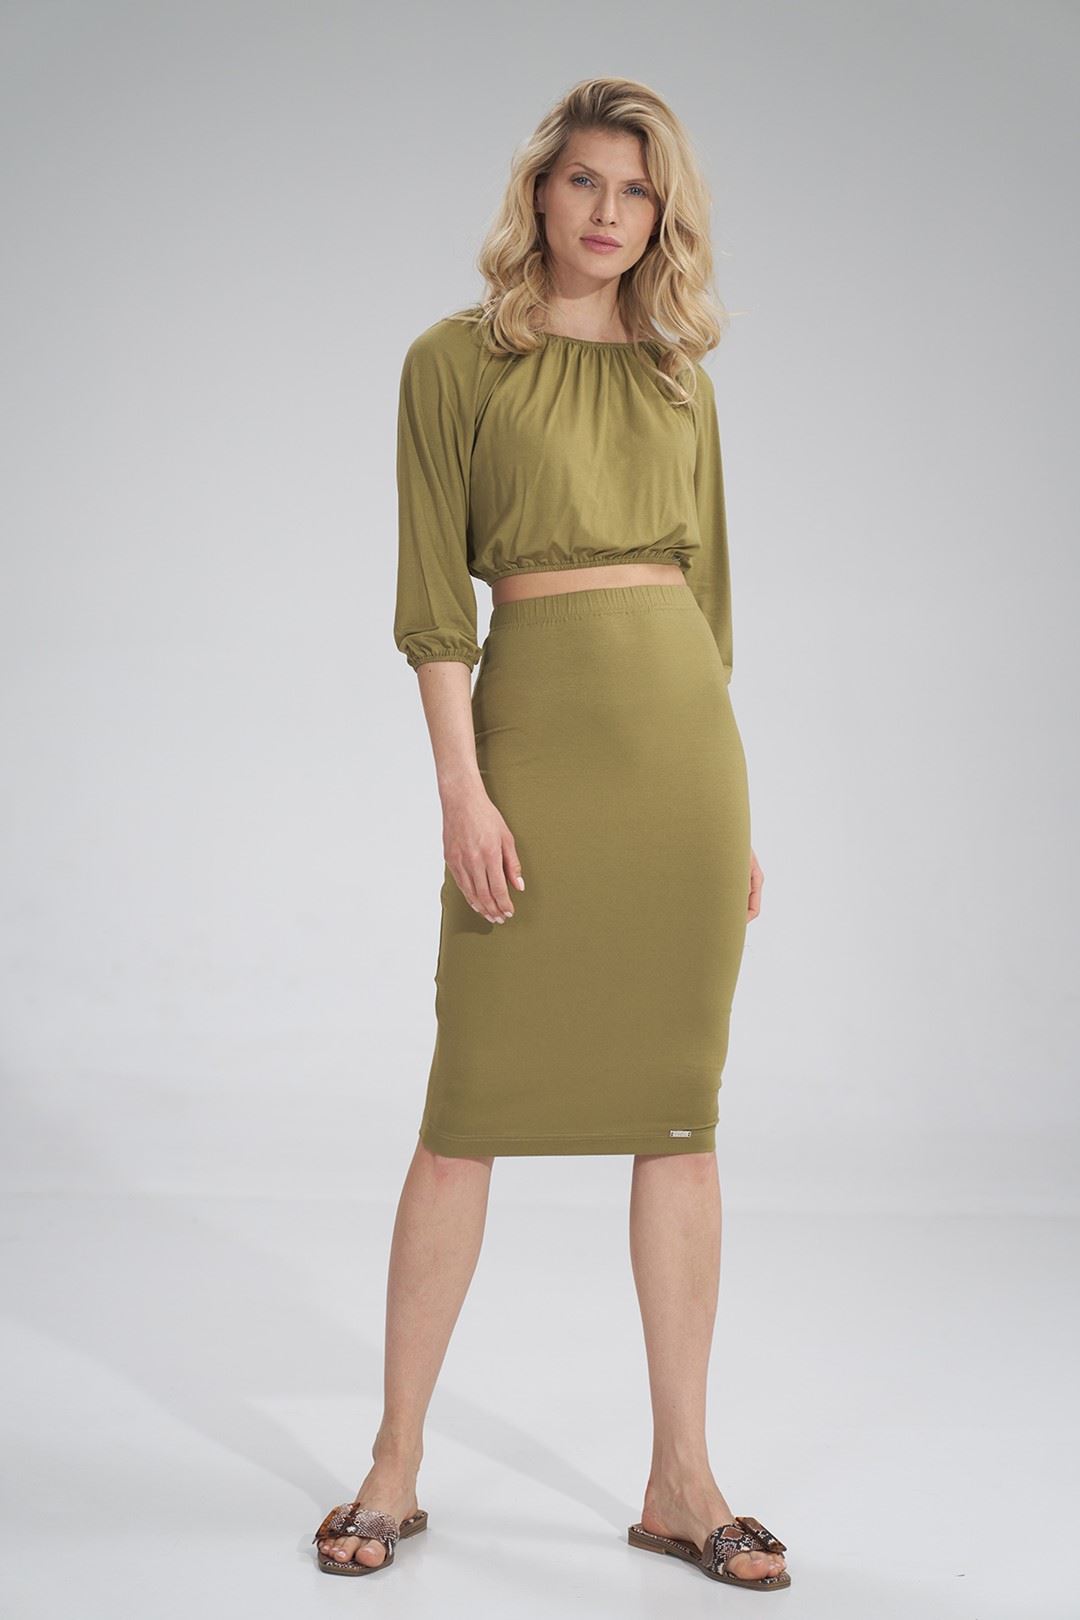 Skirt M793 Light Olive Green S